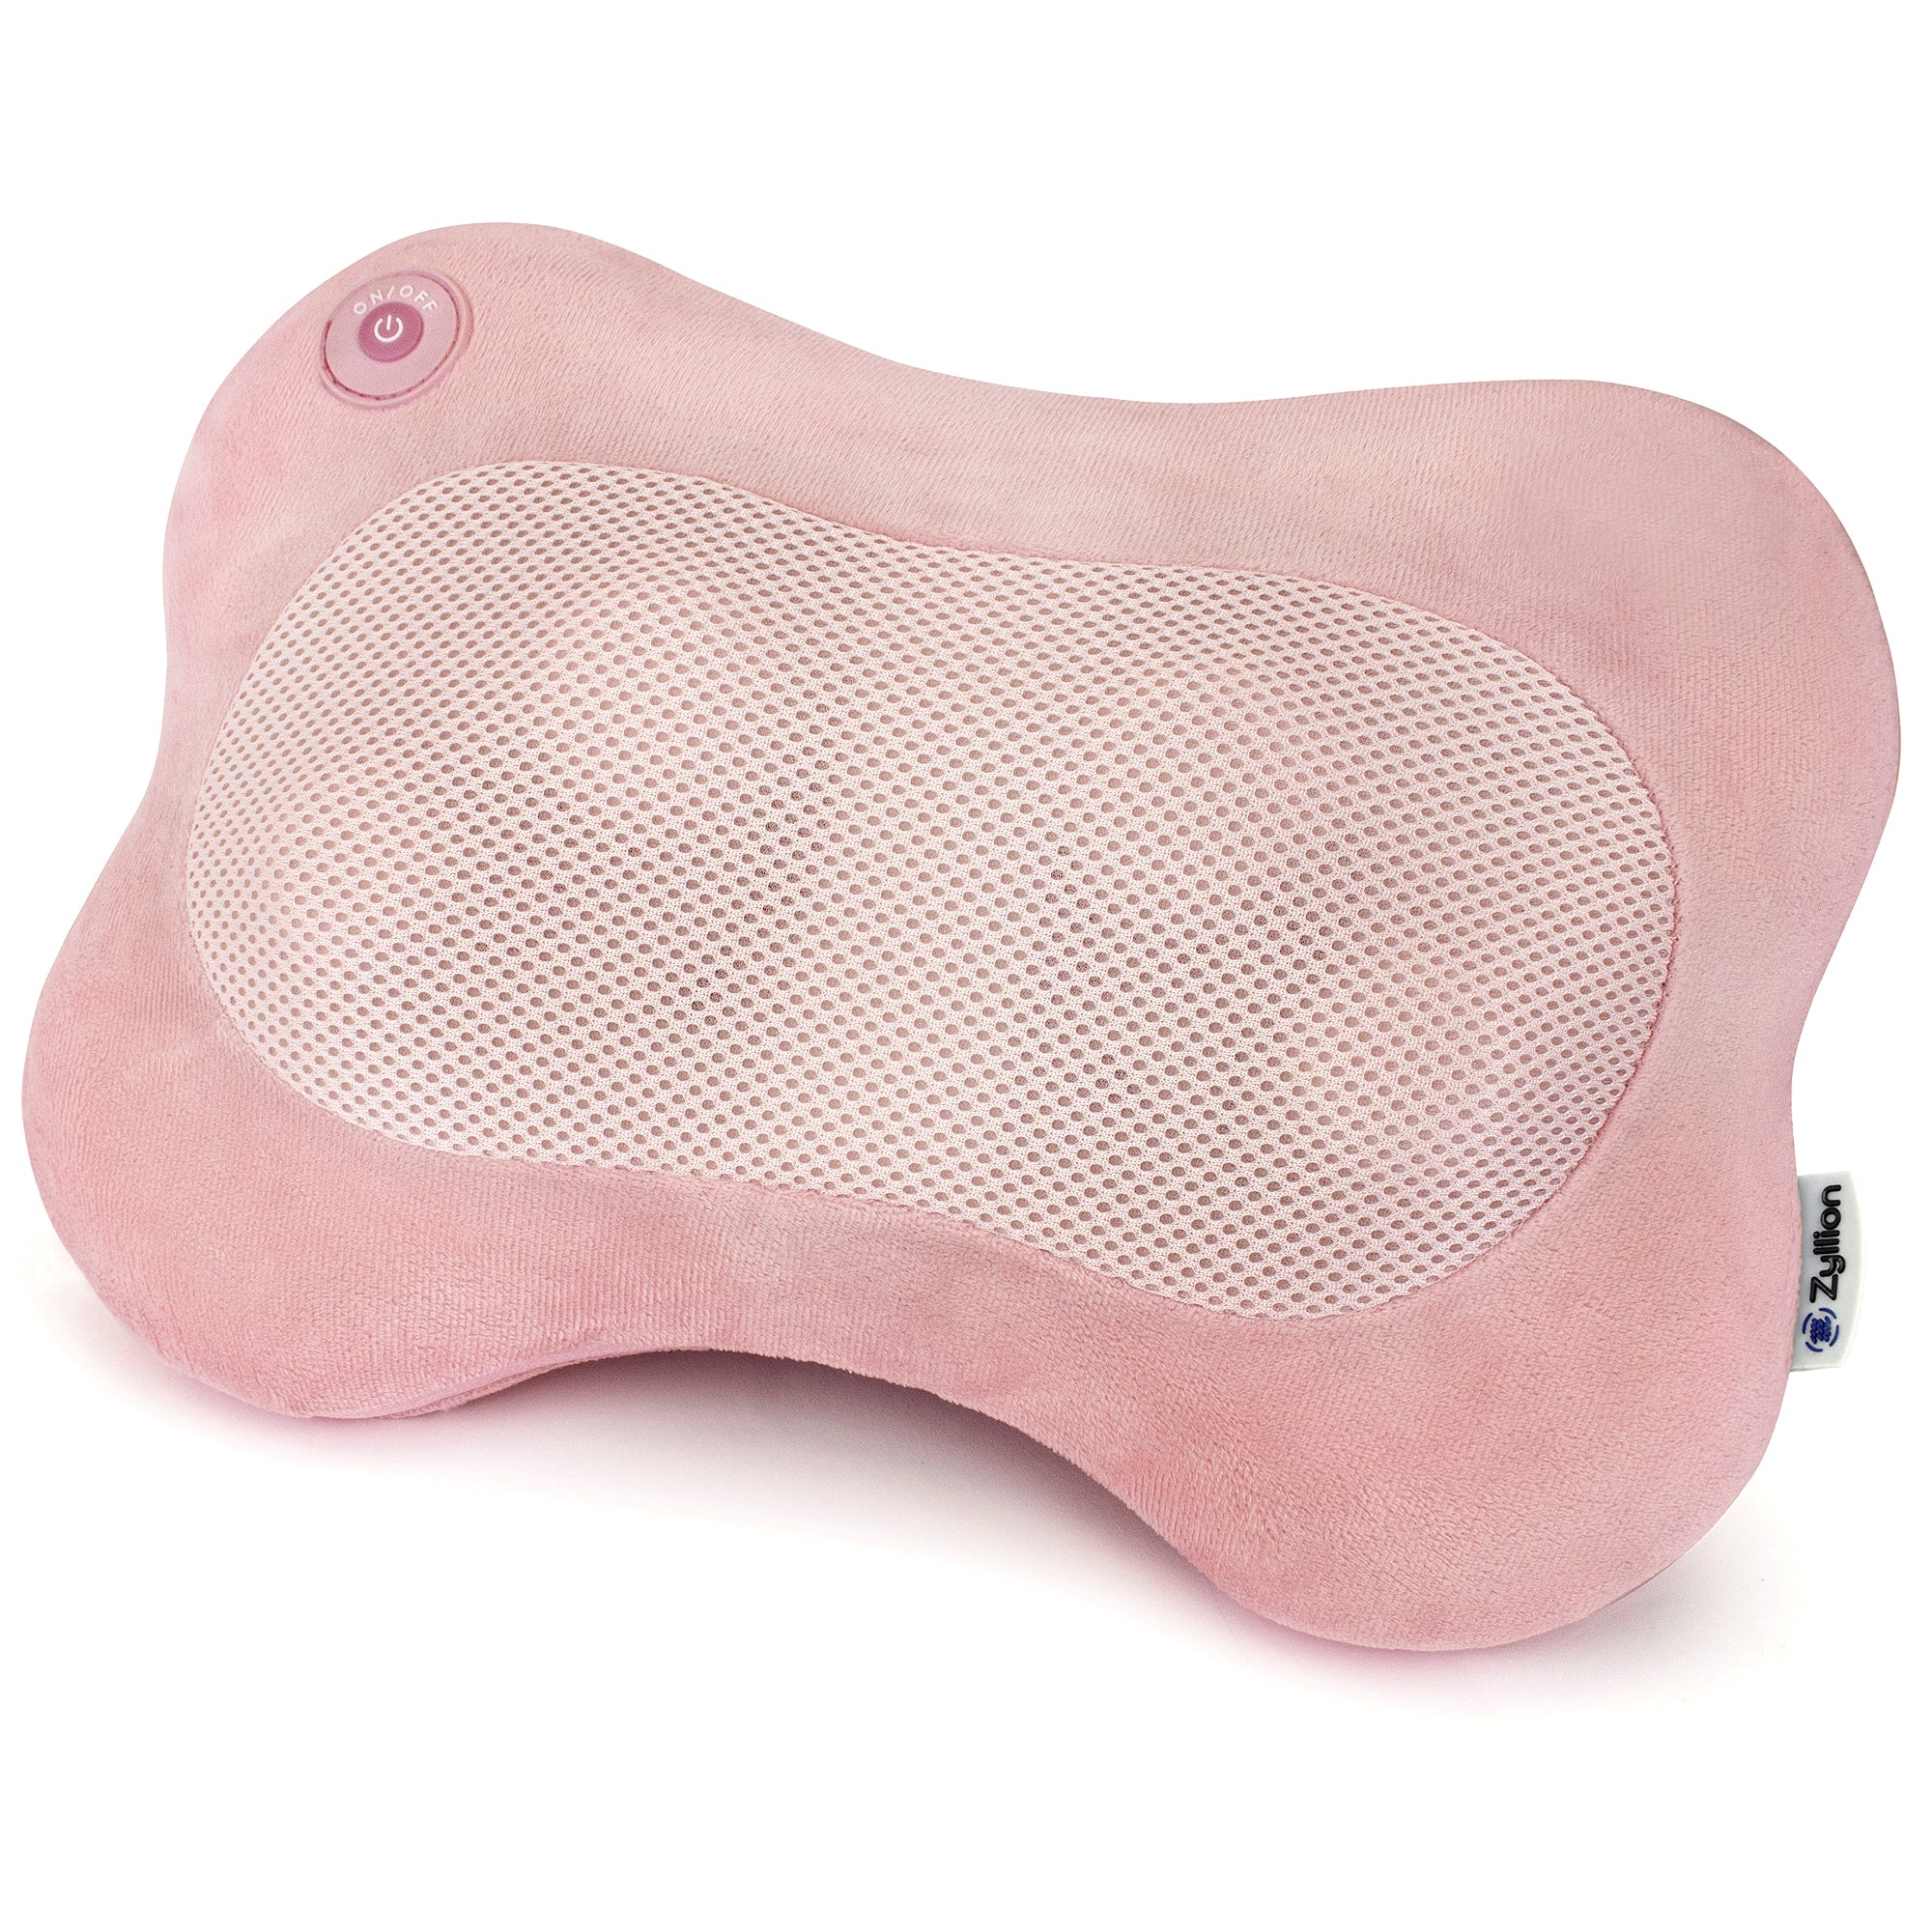 Zyllion Shiatsu Heated Pillow Massager for Back & Neck